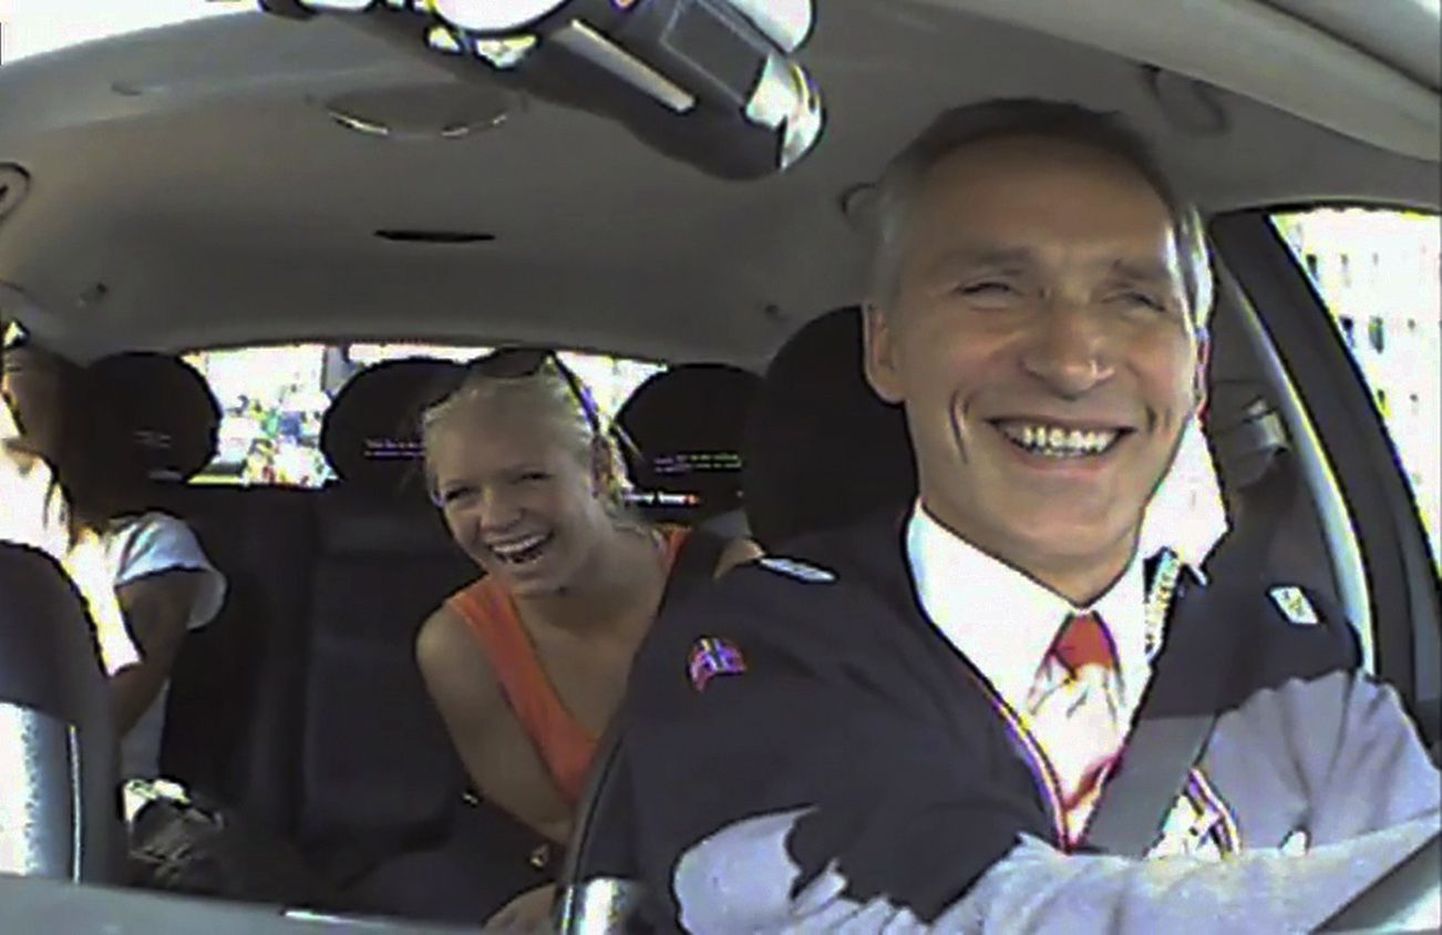 Премьер-министр Норвегии Йенс Столтенберг провел один день за рулем такси в Осло, чтобы пообщаться с избирателями.